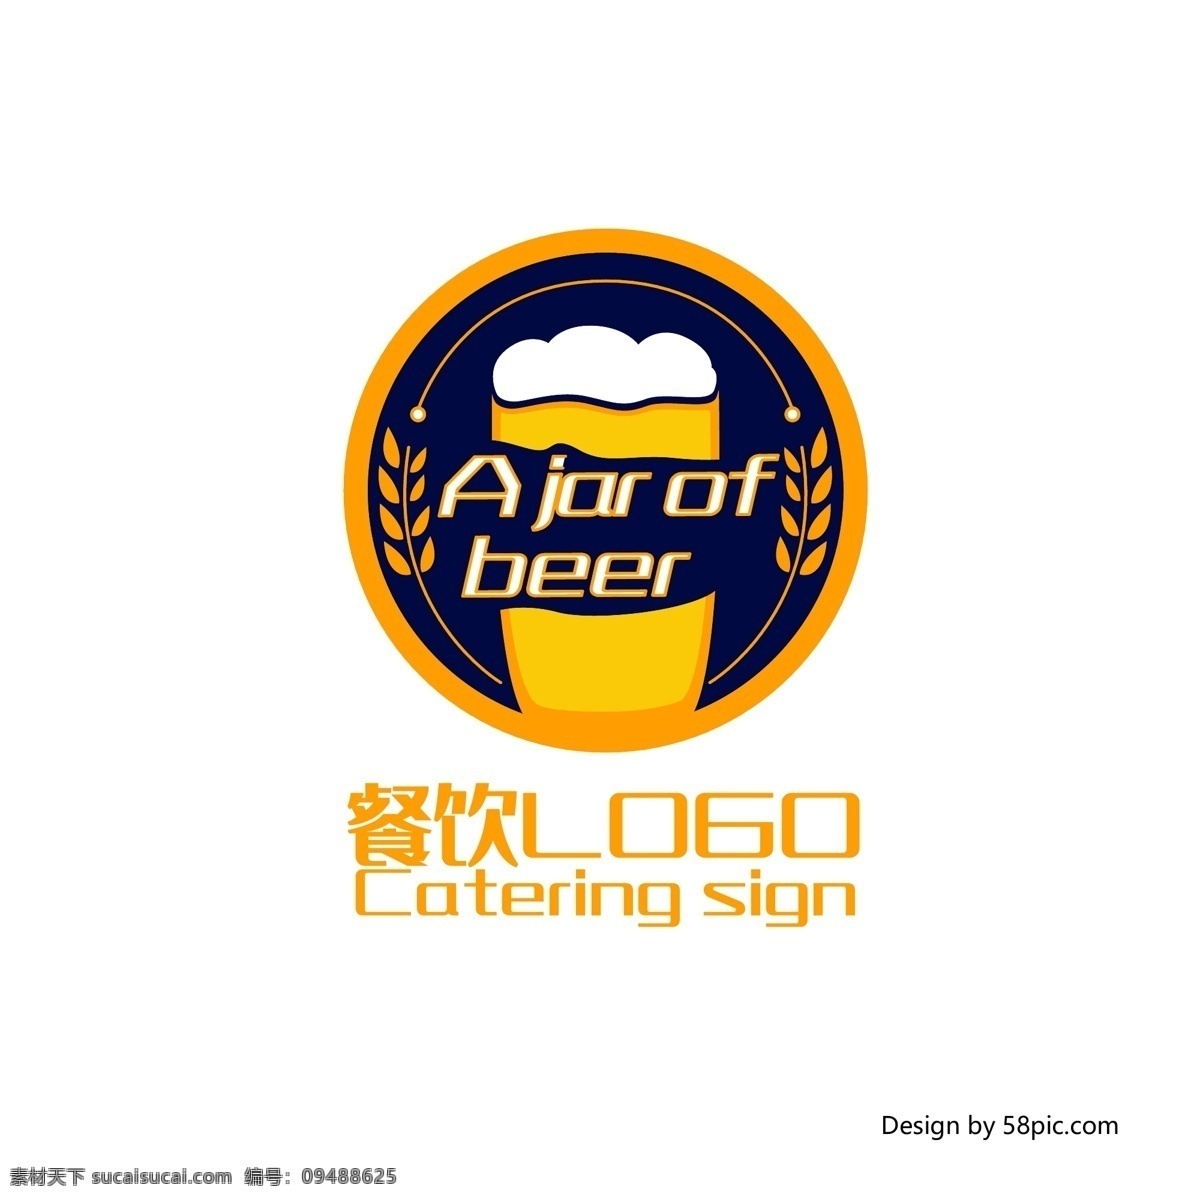 原创 创意 手绘 酒杯 啤酒 扎啤 饮品 logo 标志 可商用 简约 酒吧